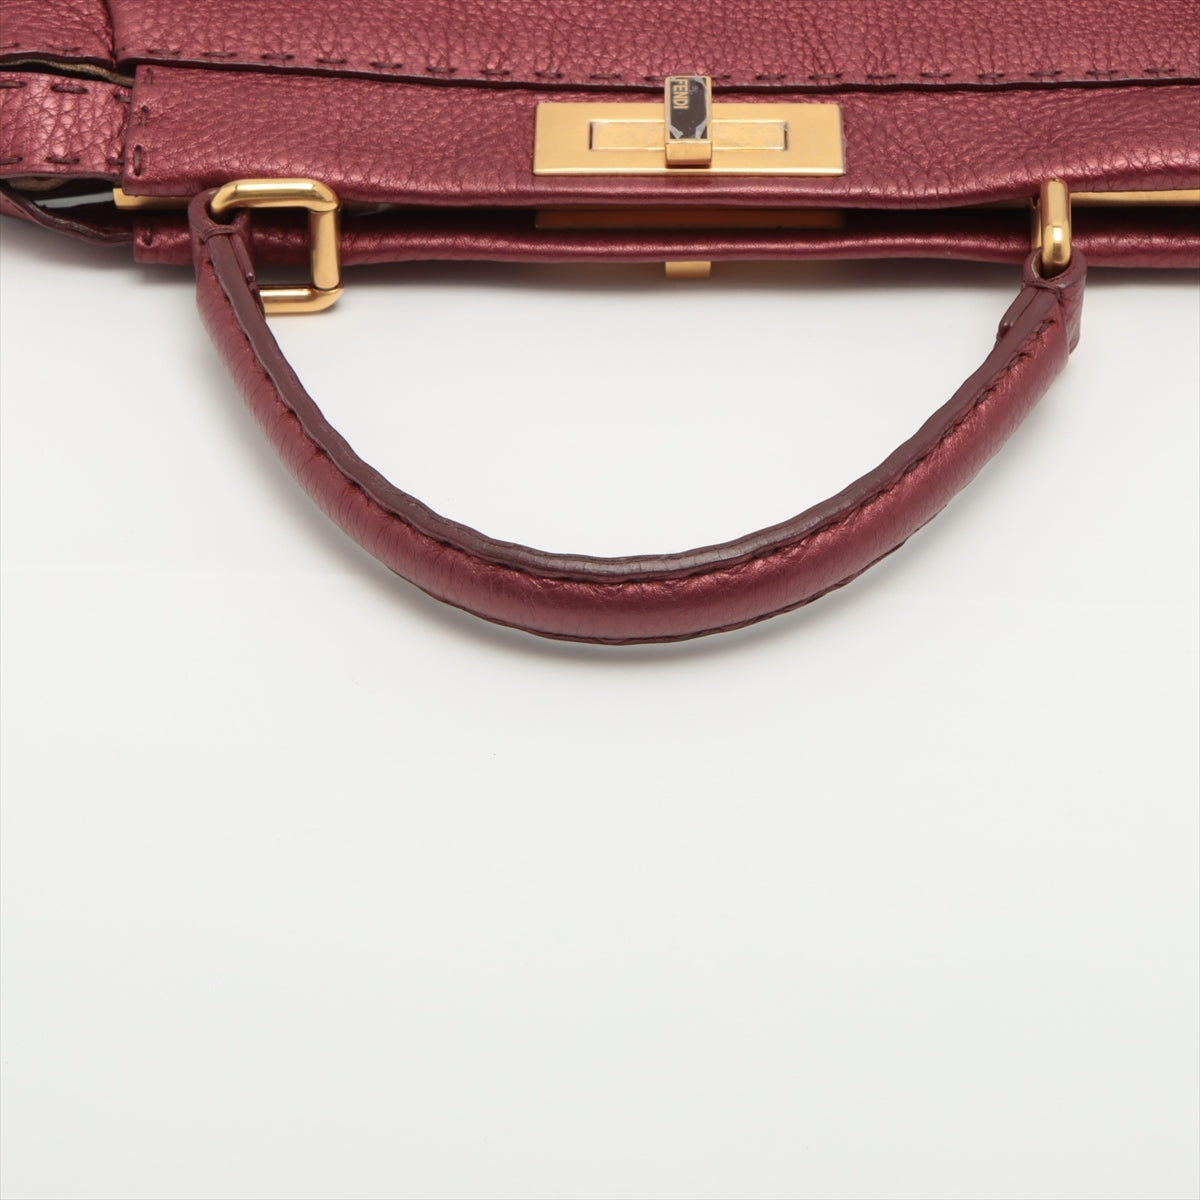 Fendi Peek-a-boo Selleria Leather Hand bag Red 8BN226